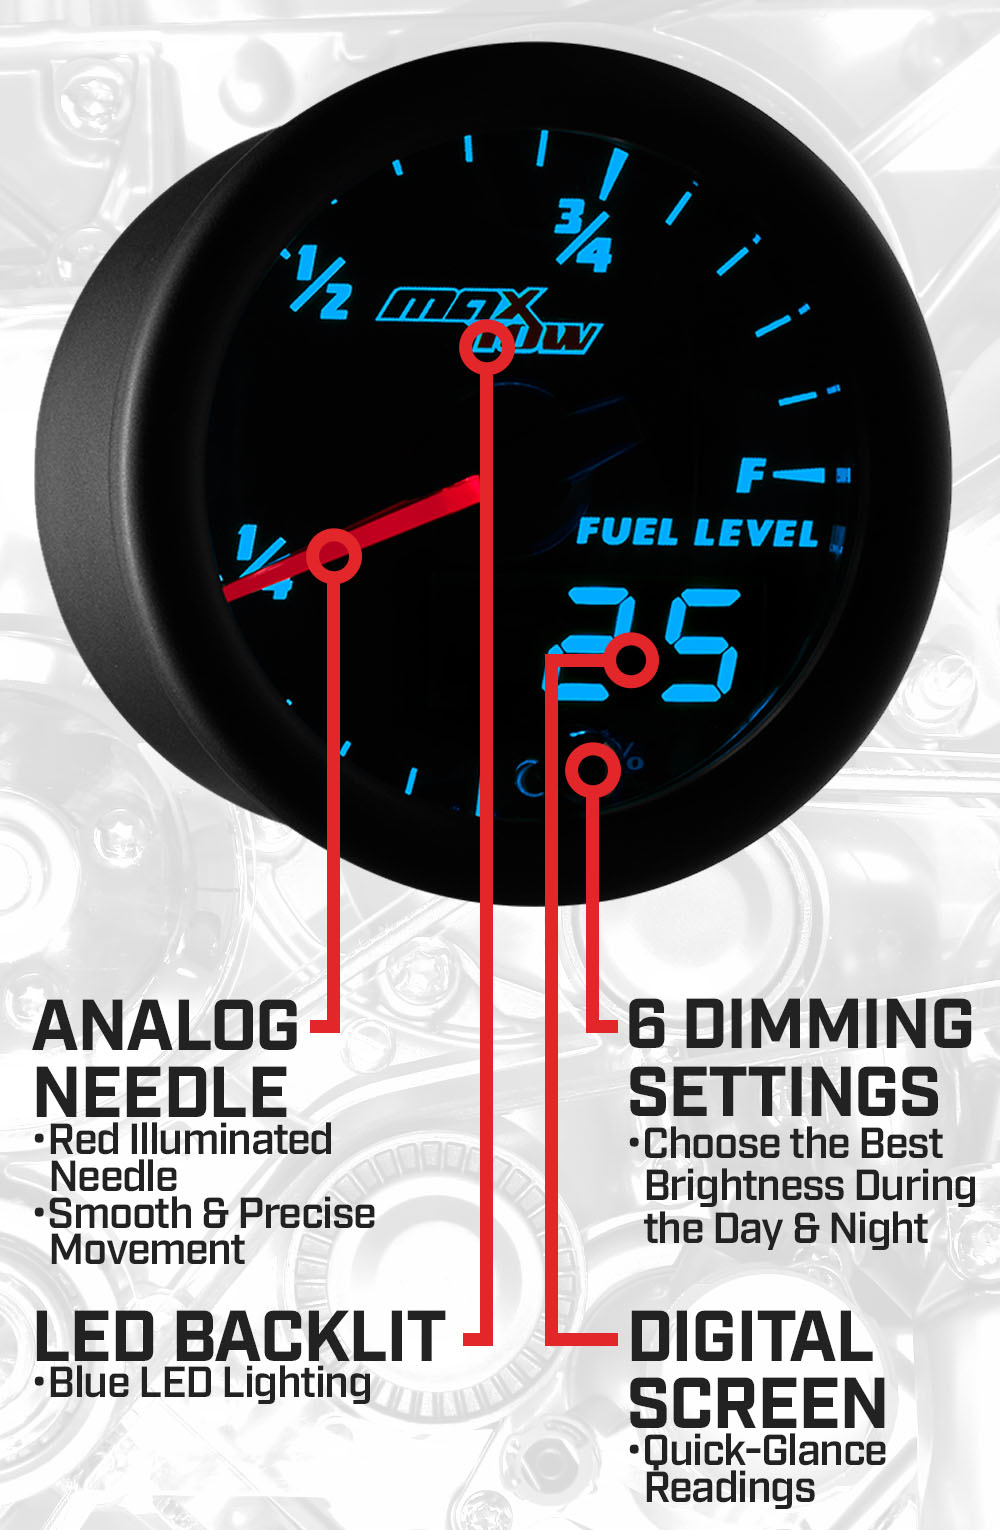 Black & Blue Double Vision Fuel Level Gauge Features